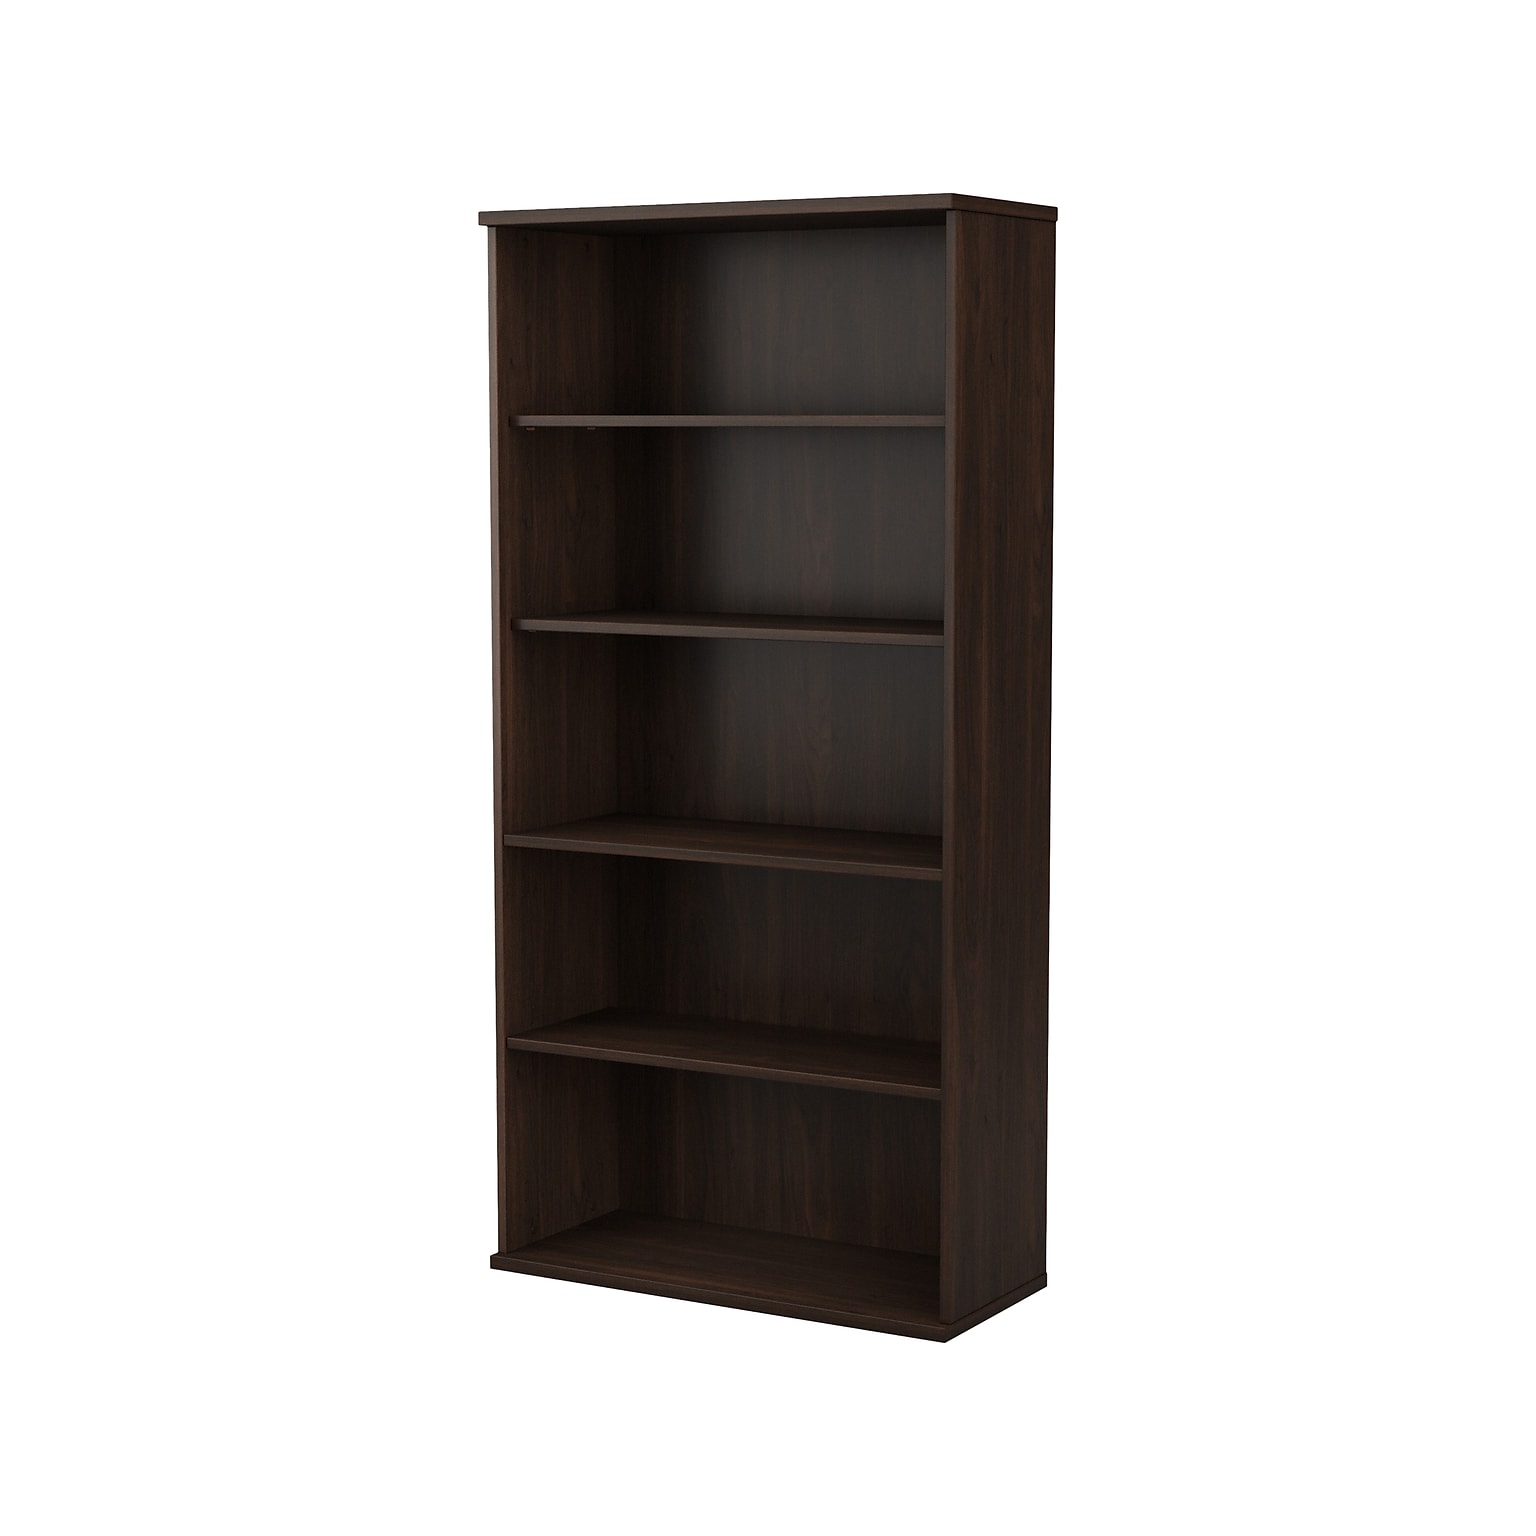 Bush Business Furniture Hybrid 73H 5-Shelf Bookcase with Adjustable Shelves, Black Walnut Laminated Wood (HYB136BW-Z)